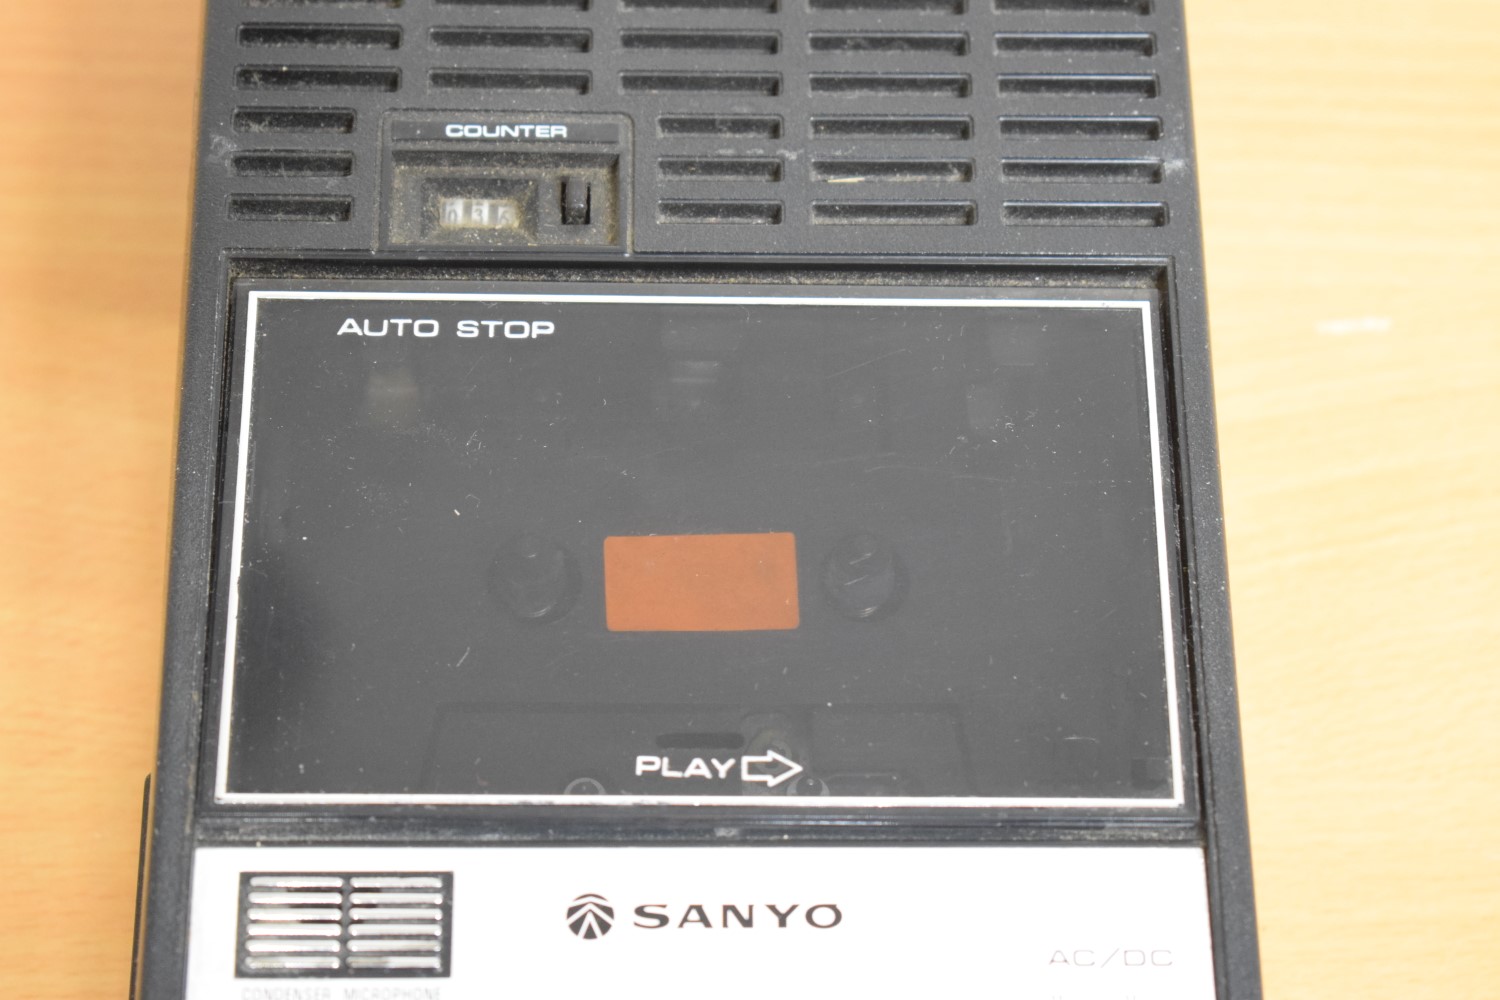 Sanyo Model M 2522EH Portable Cassette Deck